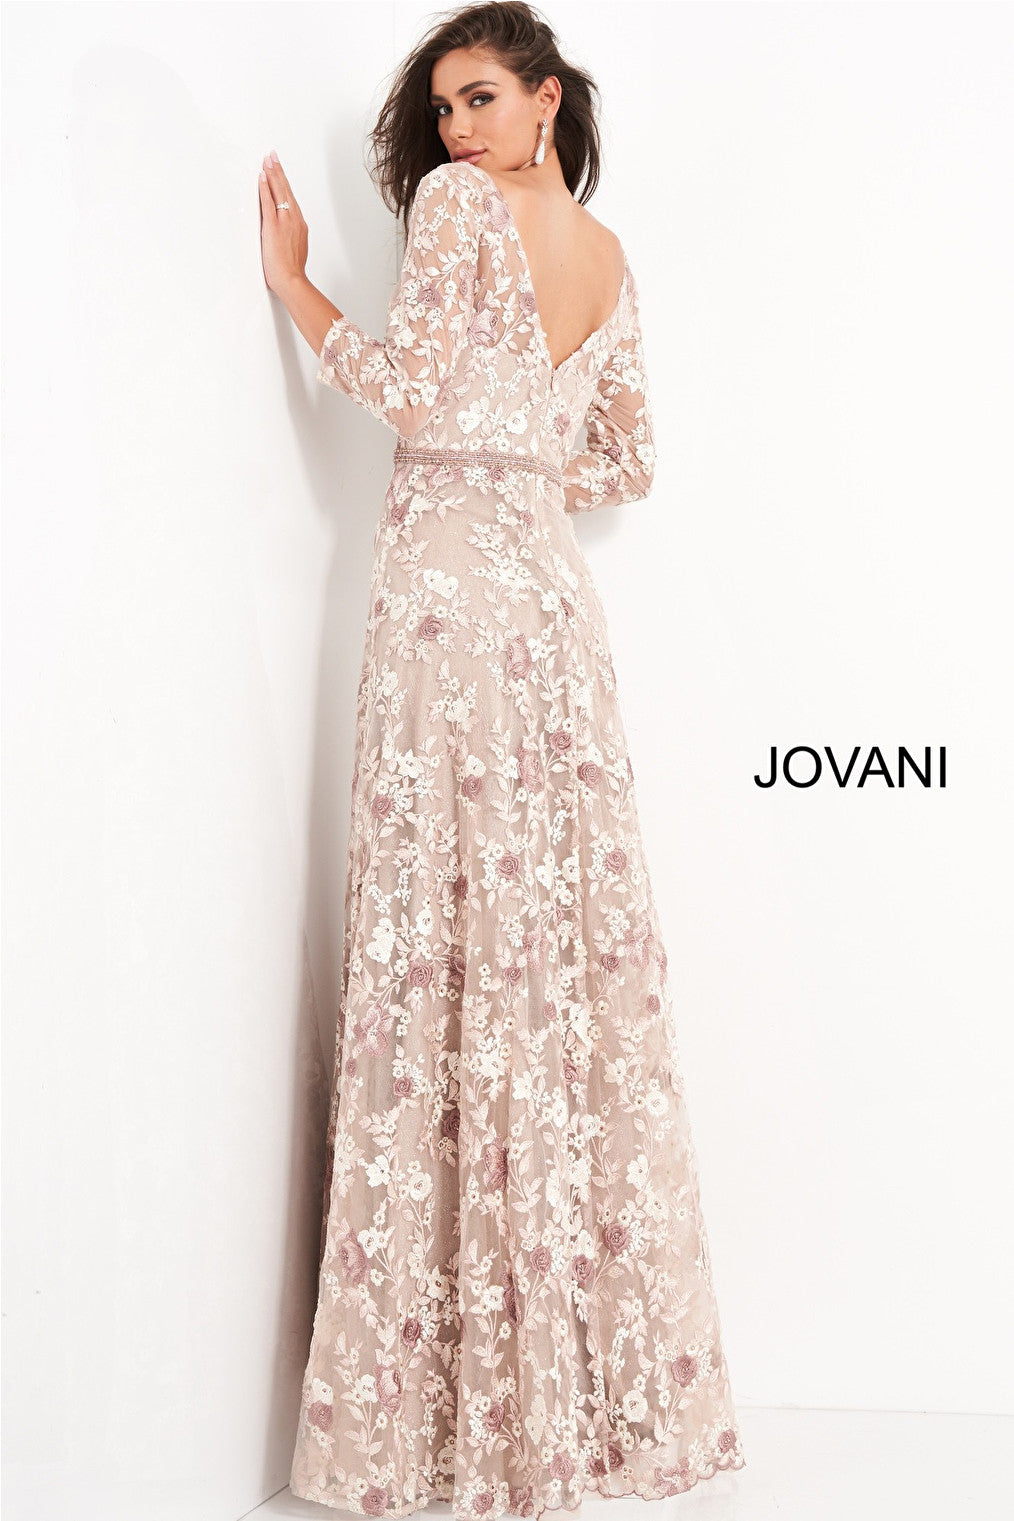 Pink floral embellished Jovani MOB and evening dress 04451